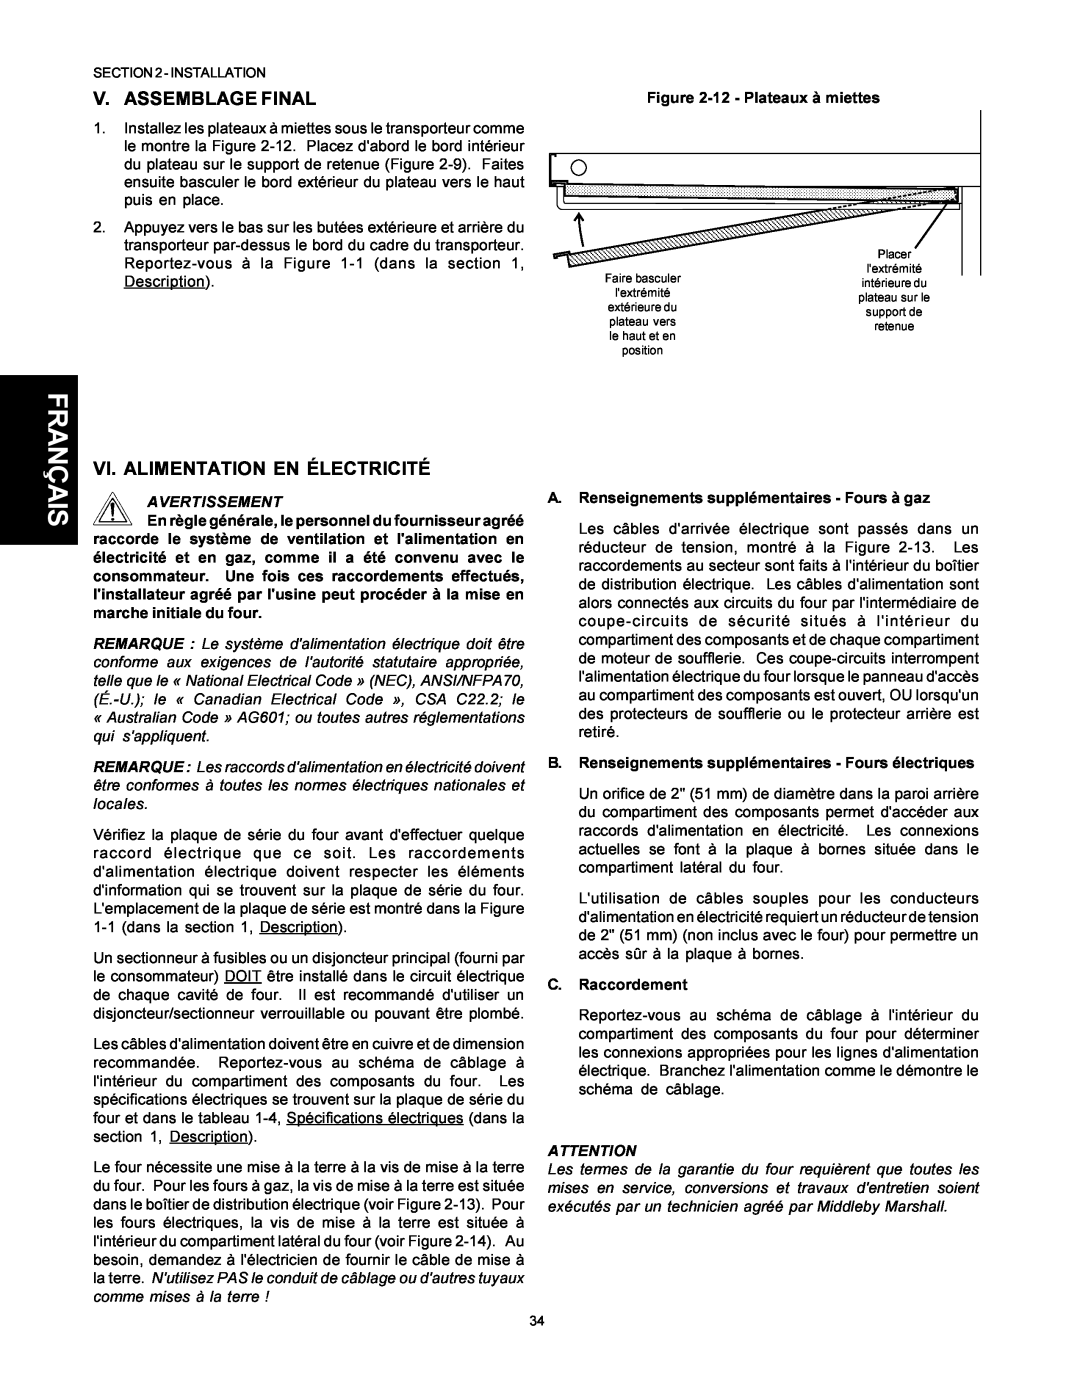 Middleby Marshall PS500 V. Assemblage Final, Vi. Alimentation En Électricité, Français, 12 - Plateaux à miettes 